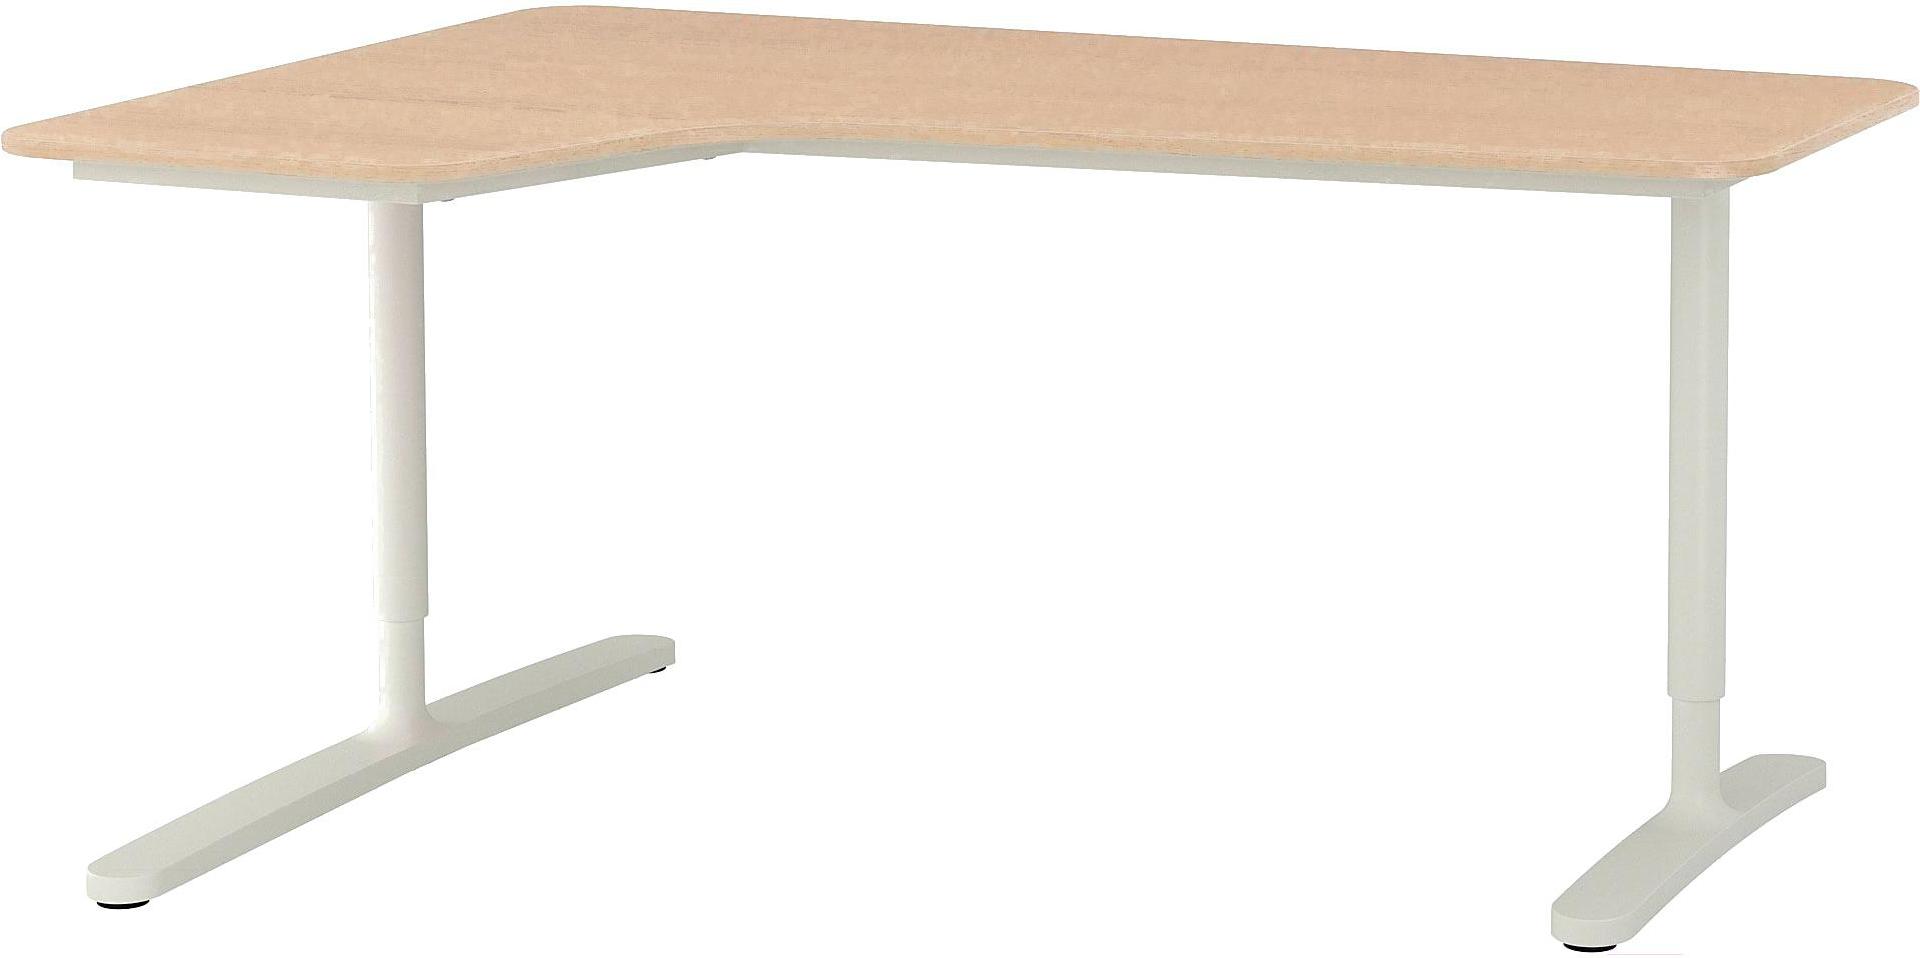 Bekant БЕКАНТ письменный стол, дубовый шпон, беленый/белый120x80 см